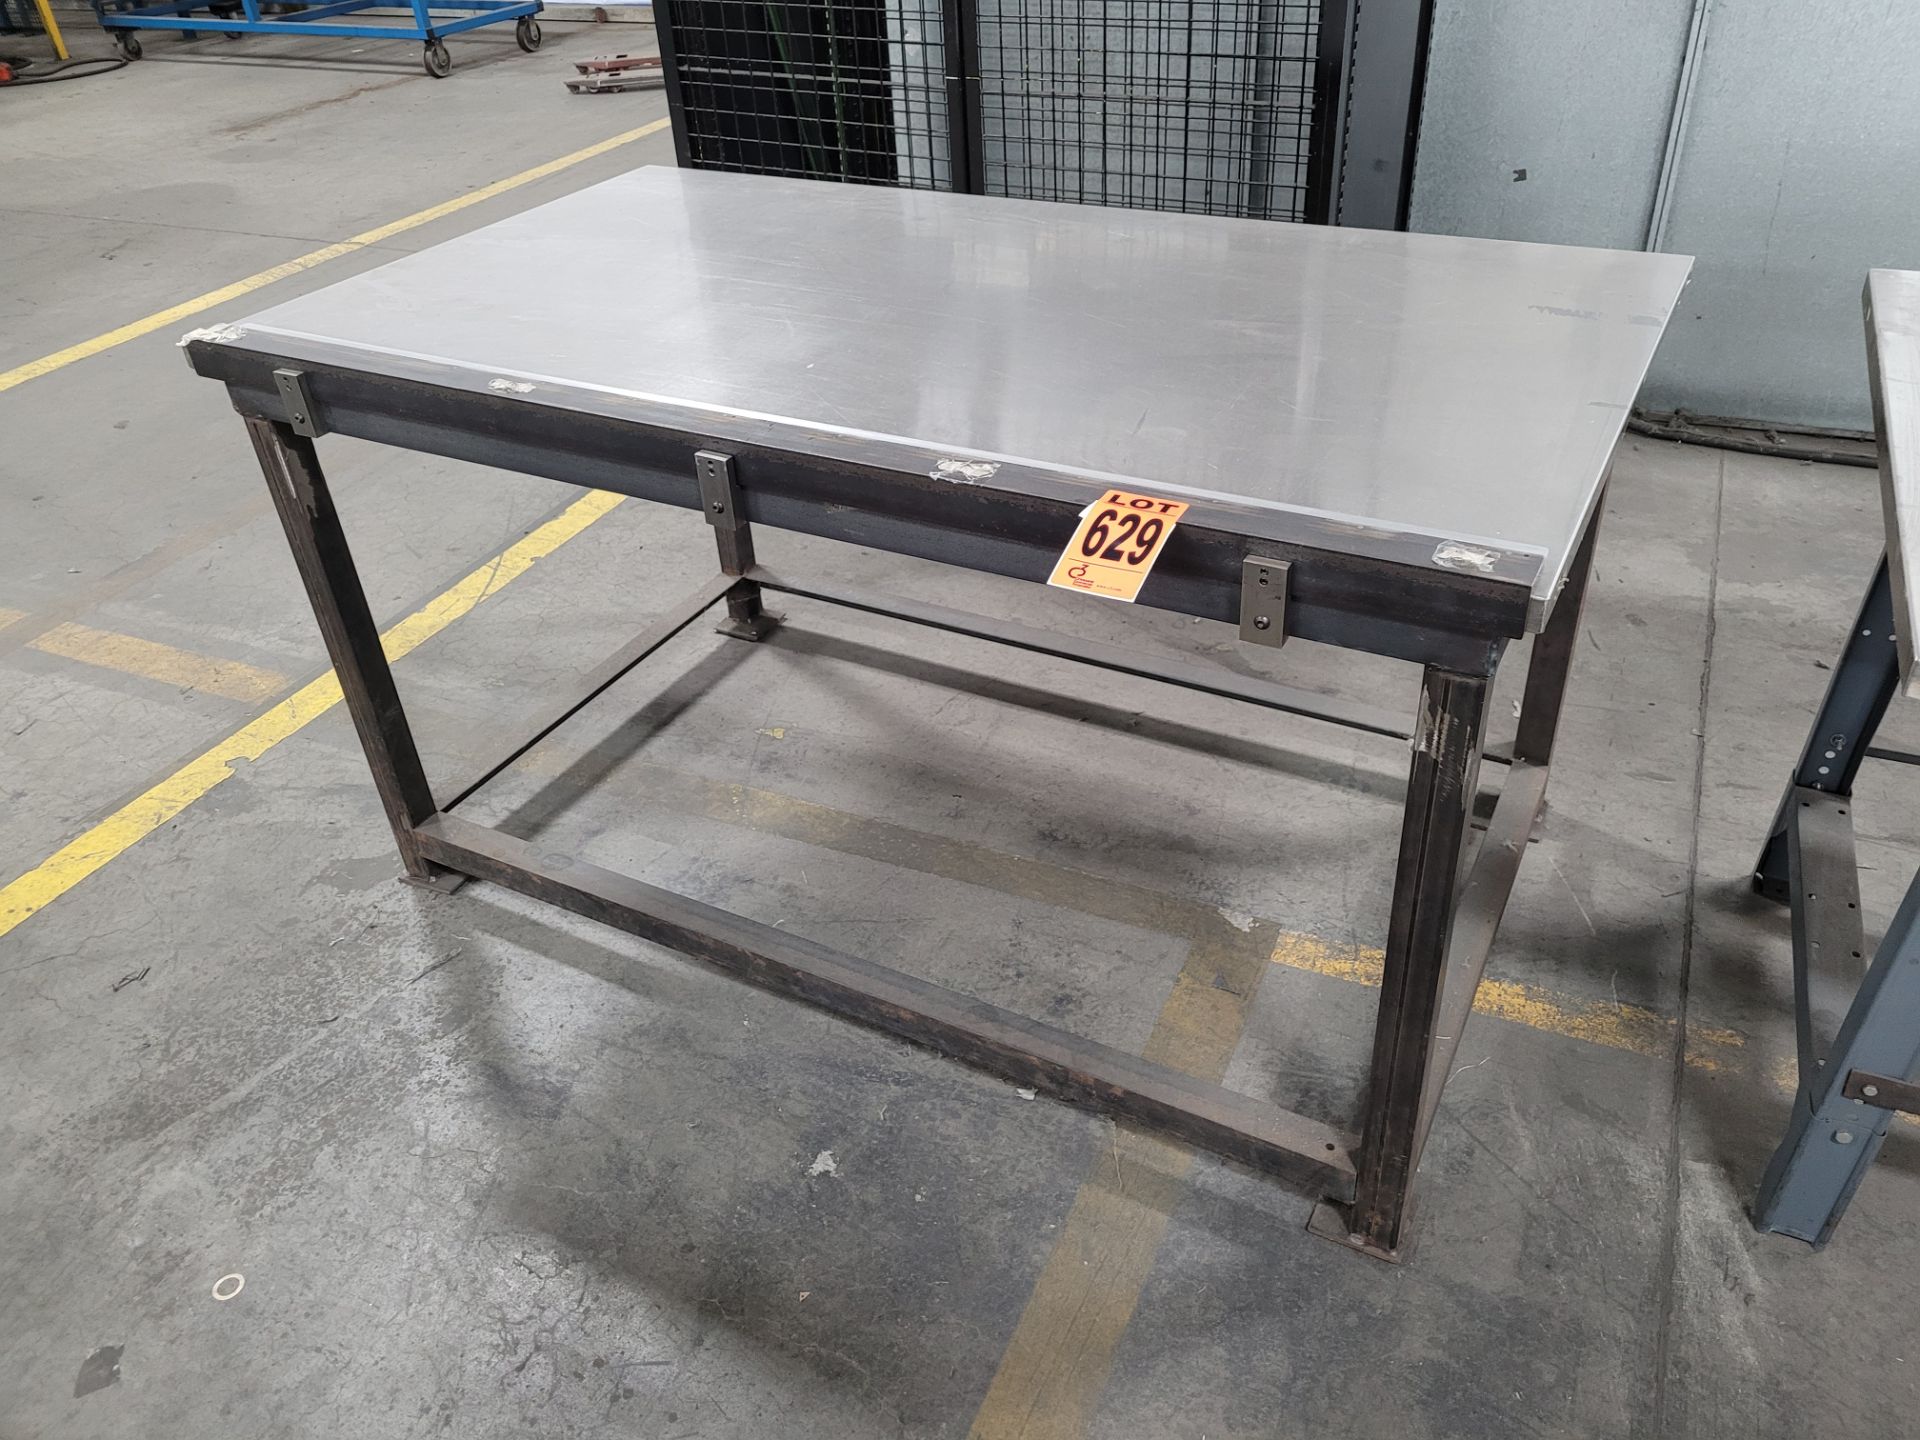 Stainless steel worktable on metal base